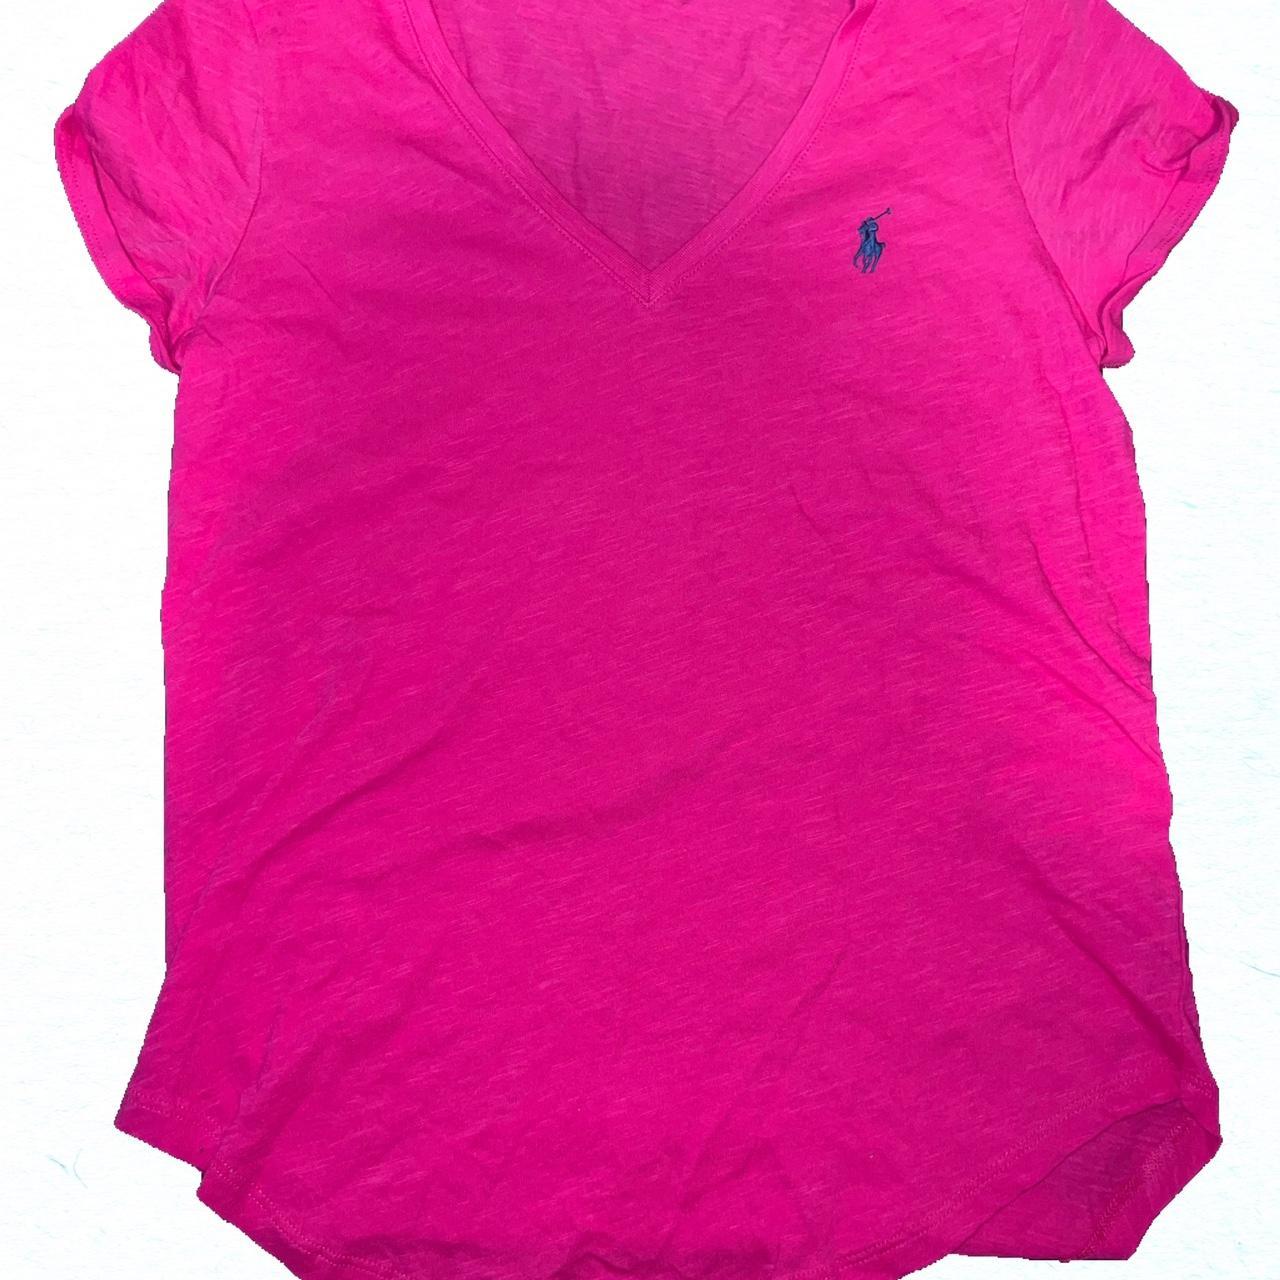 Small Polo Ralph Lauren pink shirt - Depop